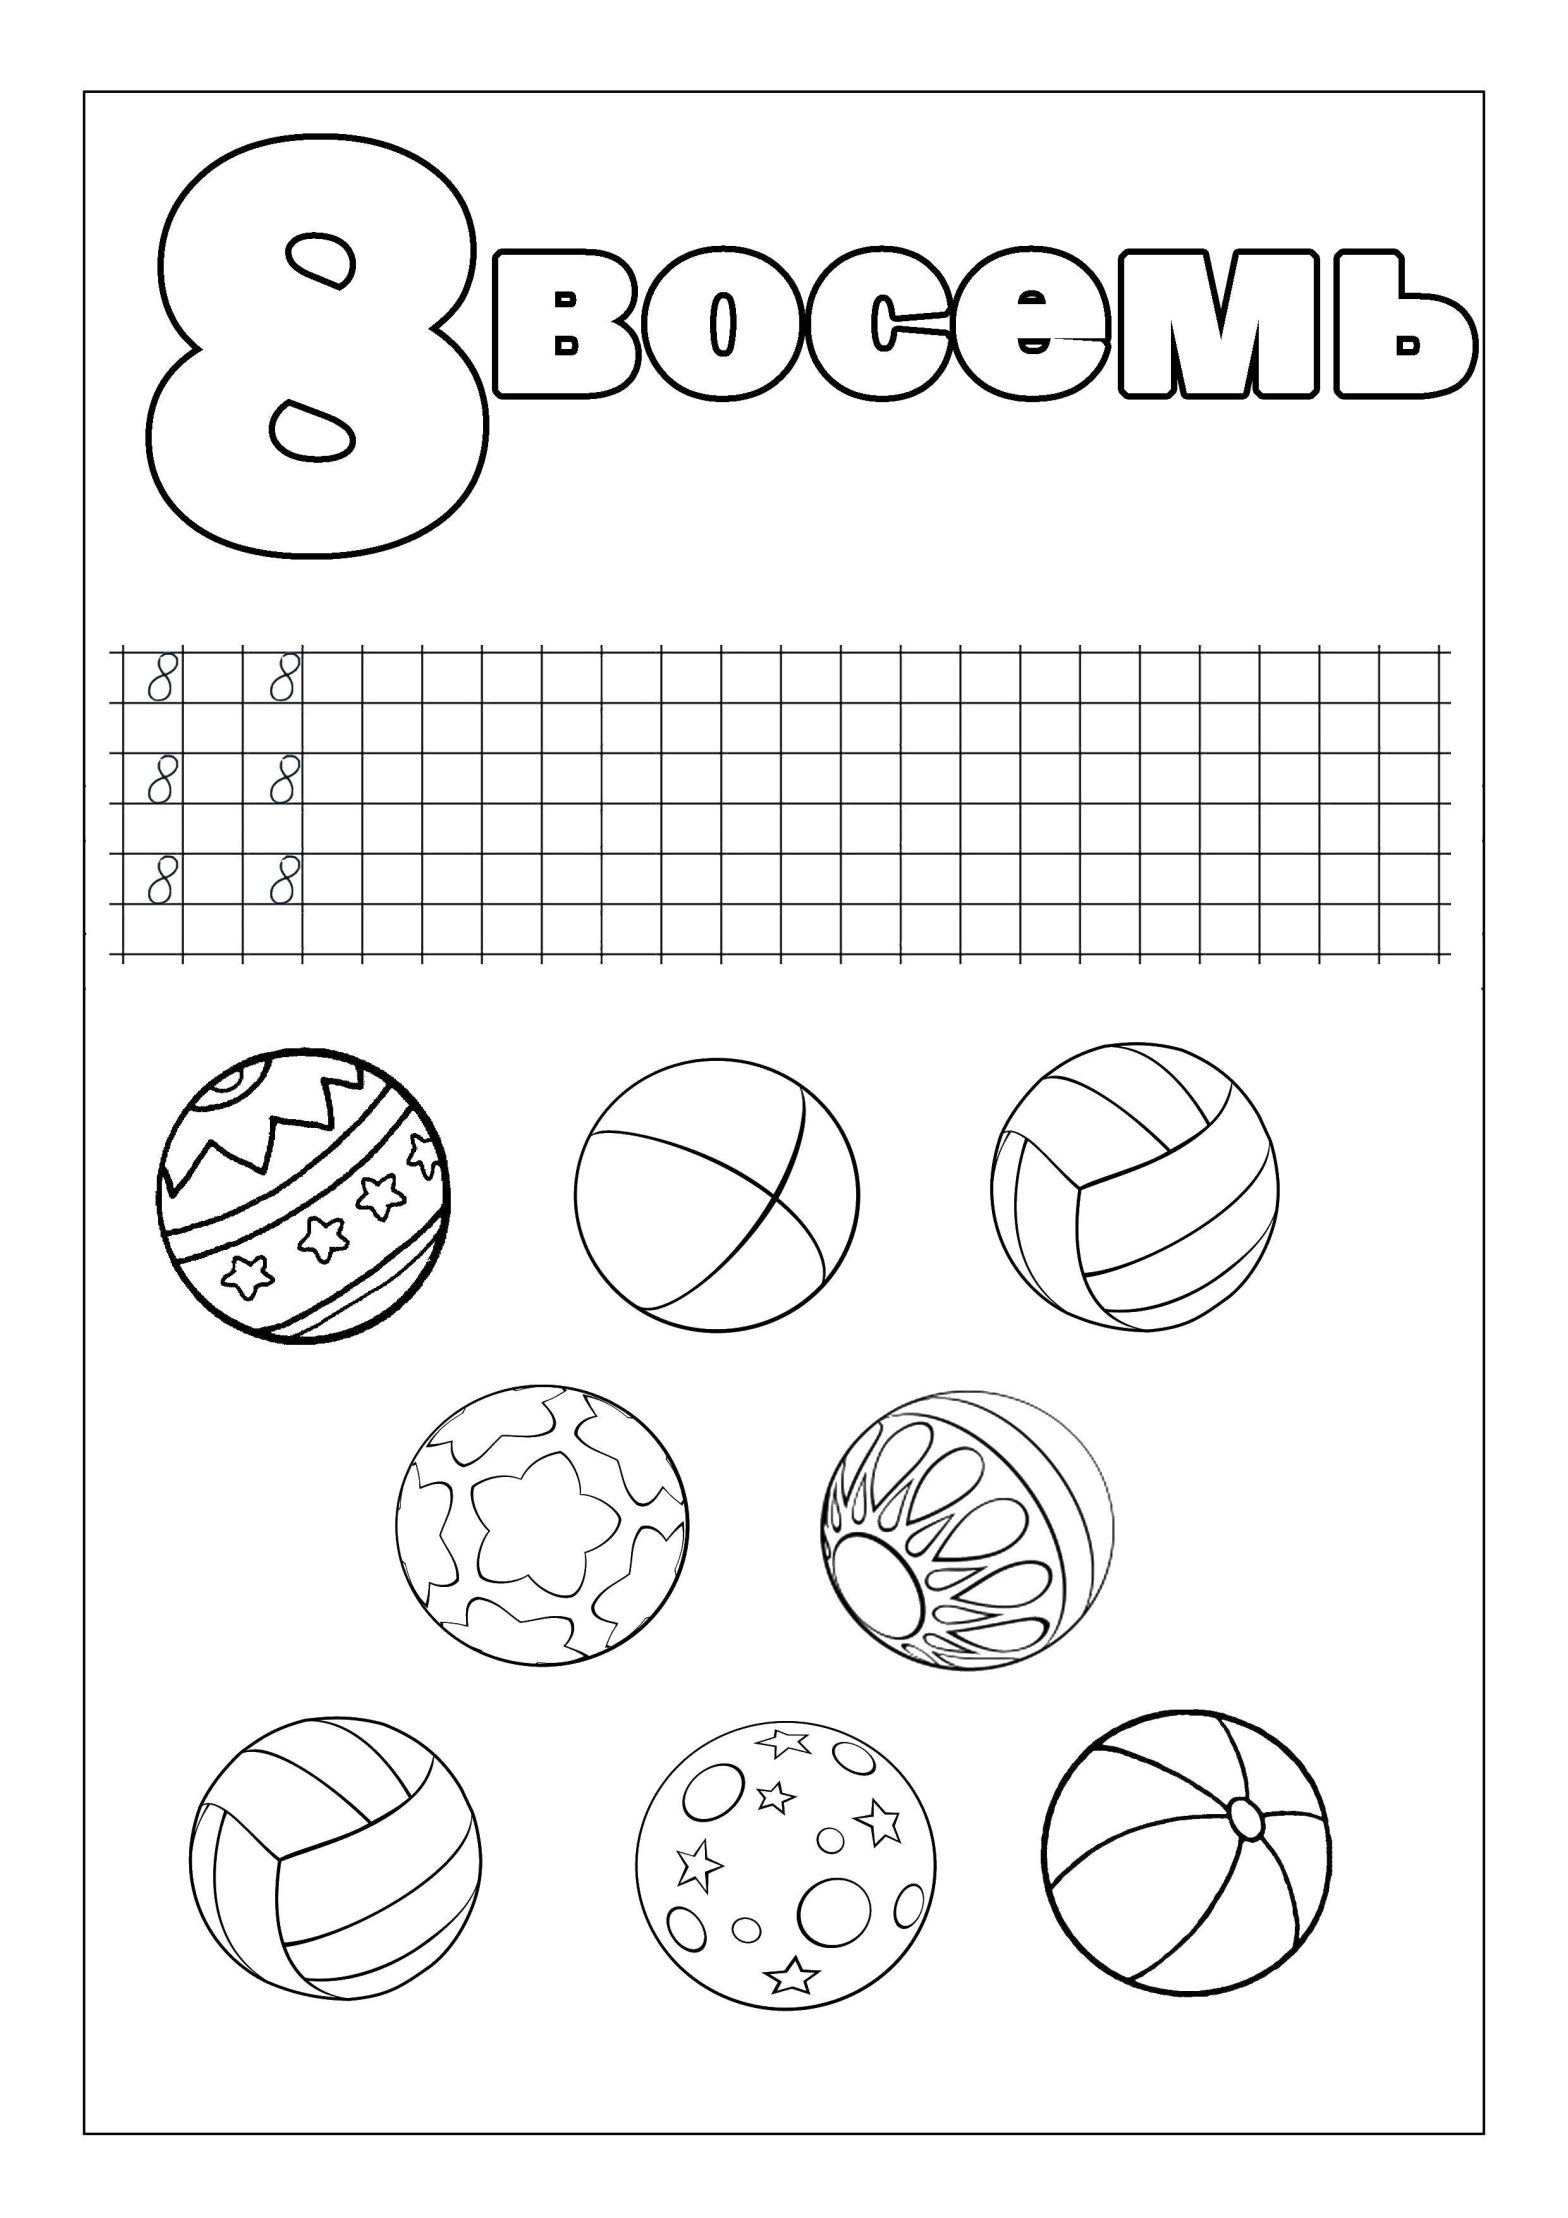 Раскраски с прописками, цифрами и мячами - бесплатные раскраски для детей (прописи, цифры, мячи)